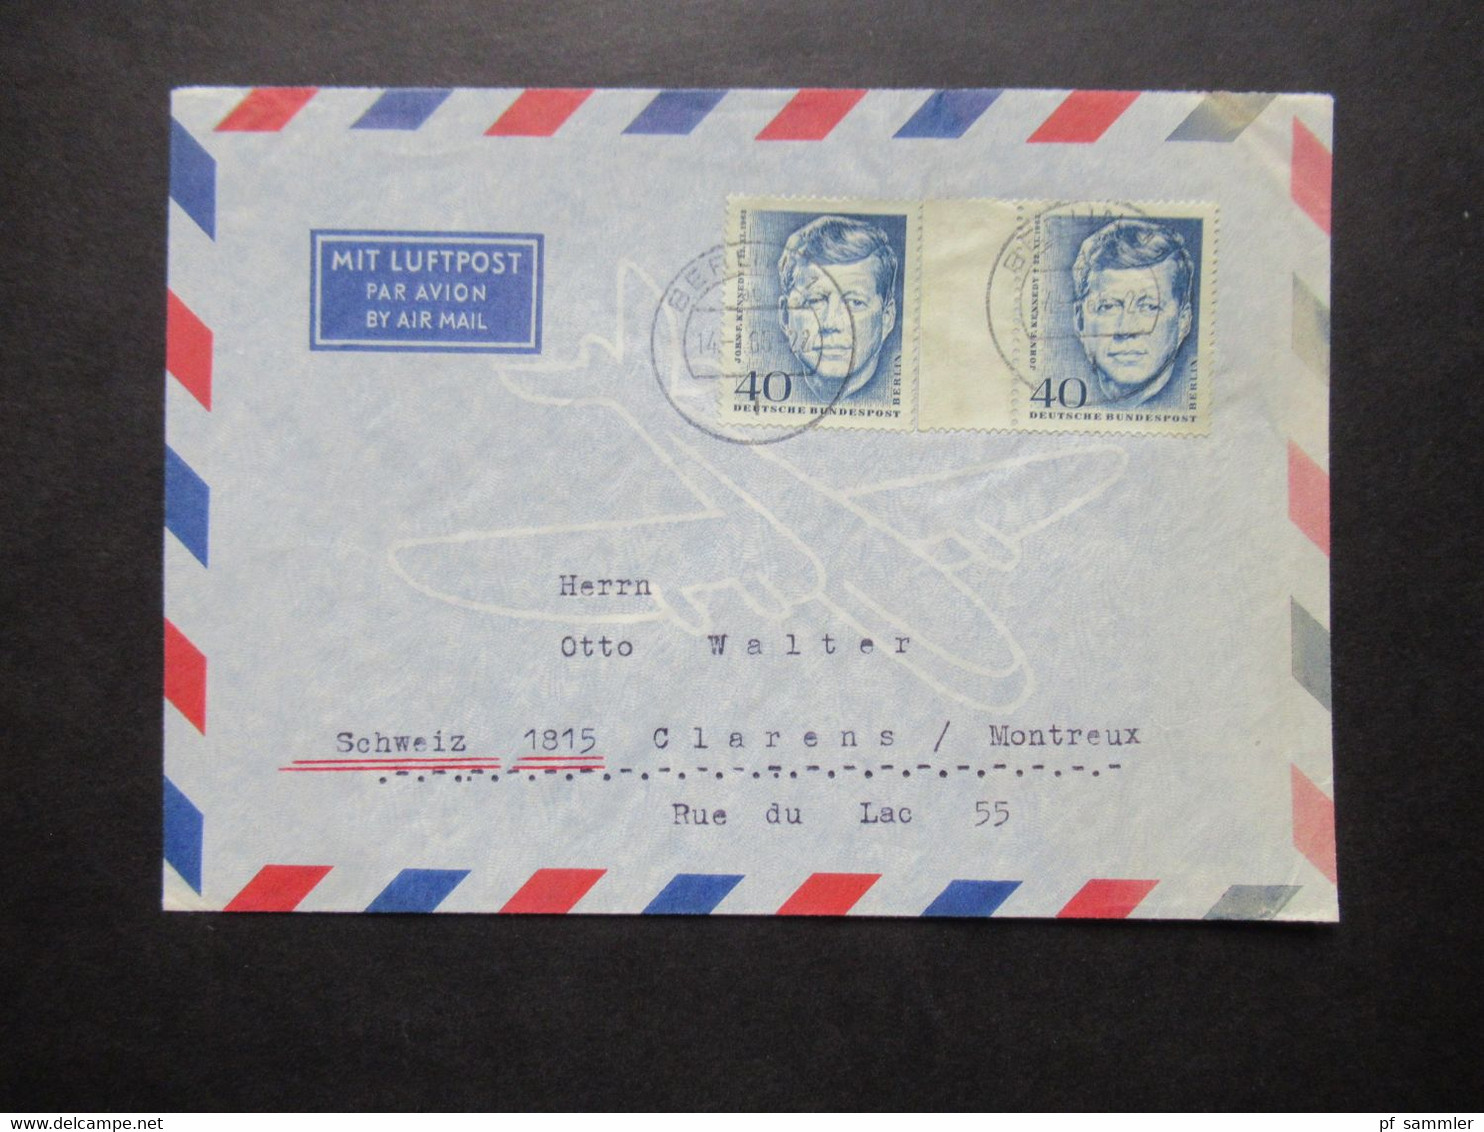 1964 Berlin (West) John F. Kennedy Nr.241 (2) MeF Auslandsbrief Mit Luftpost Berlin - Clarens Montreux Schweiz - Storia Postale